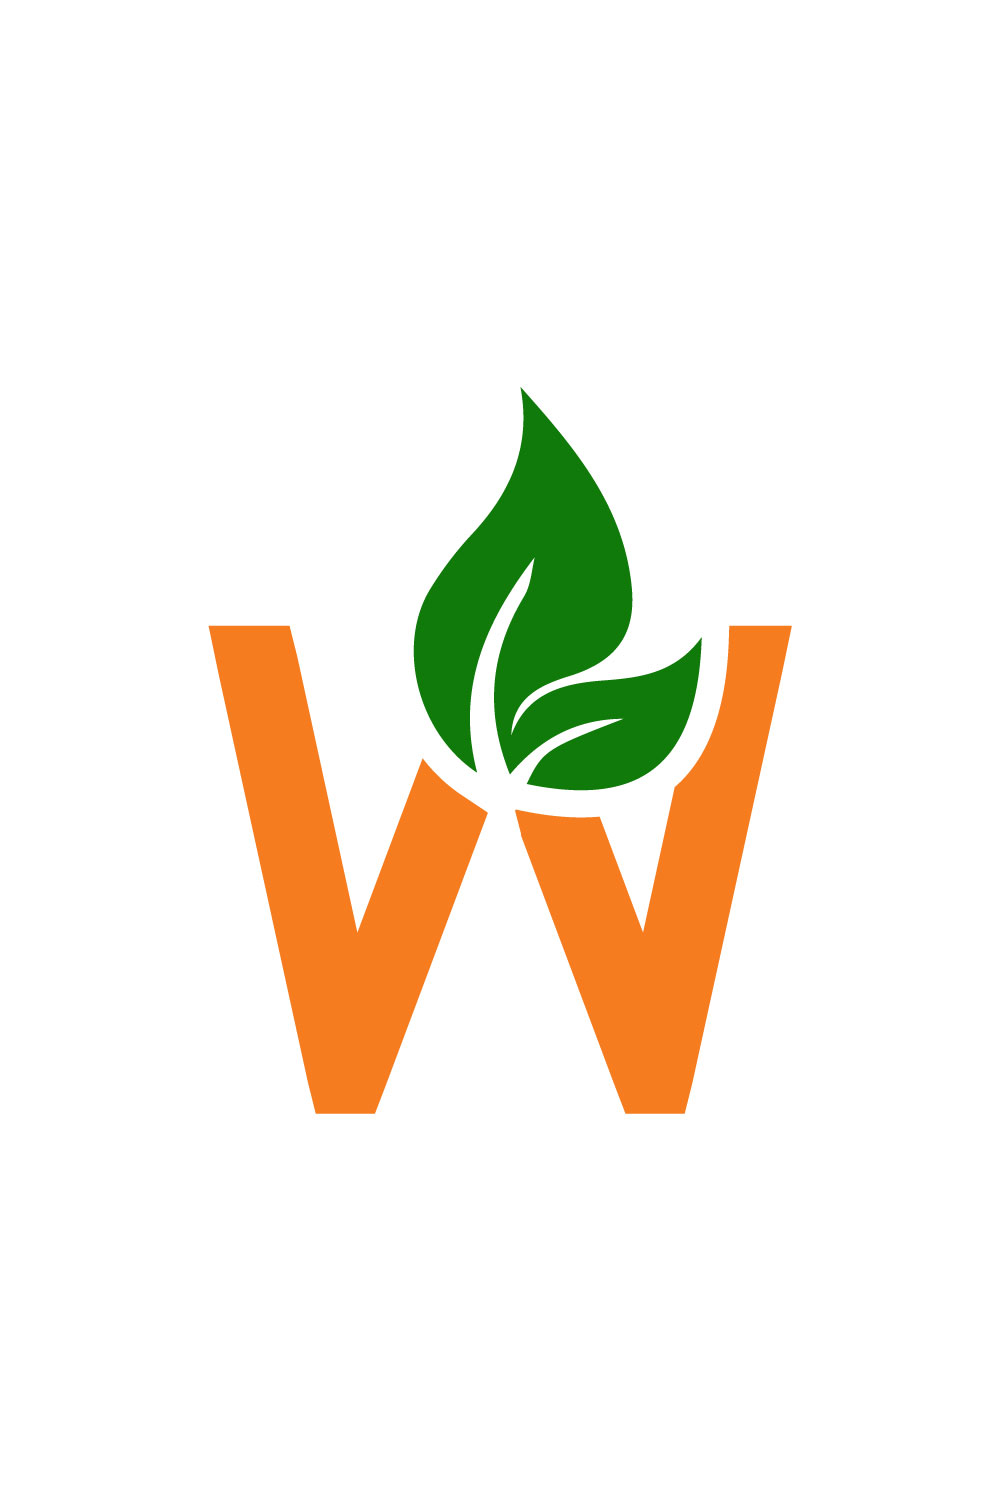 Free W organic logo pinterest preview image.